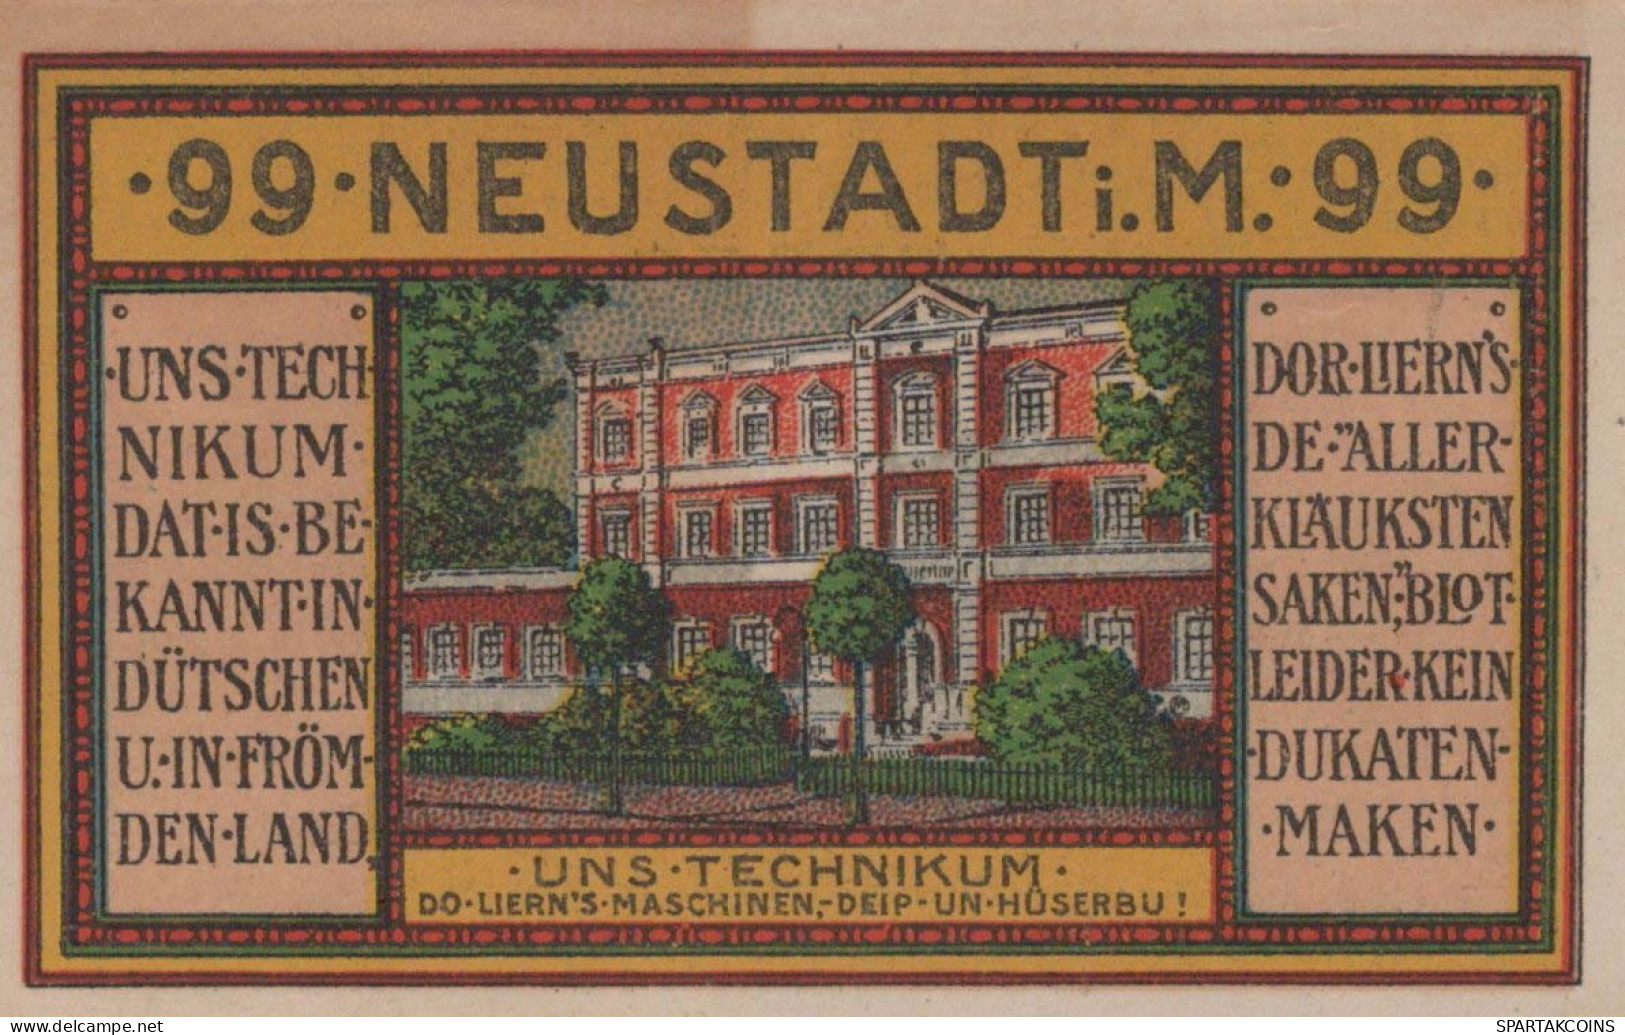 99 PFENNIG 1921 Stadt NEUSTADT MECKLENBURG-SCHWERIN UNC DEUTSCHLAND #PH890 - Lokale Ausgaben